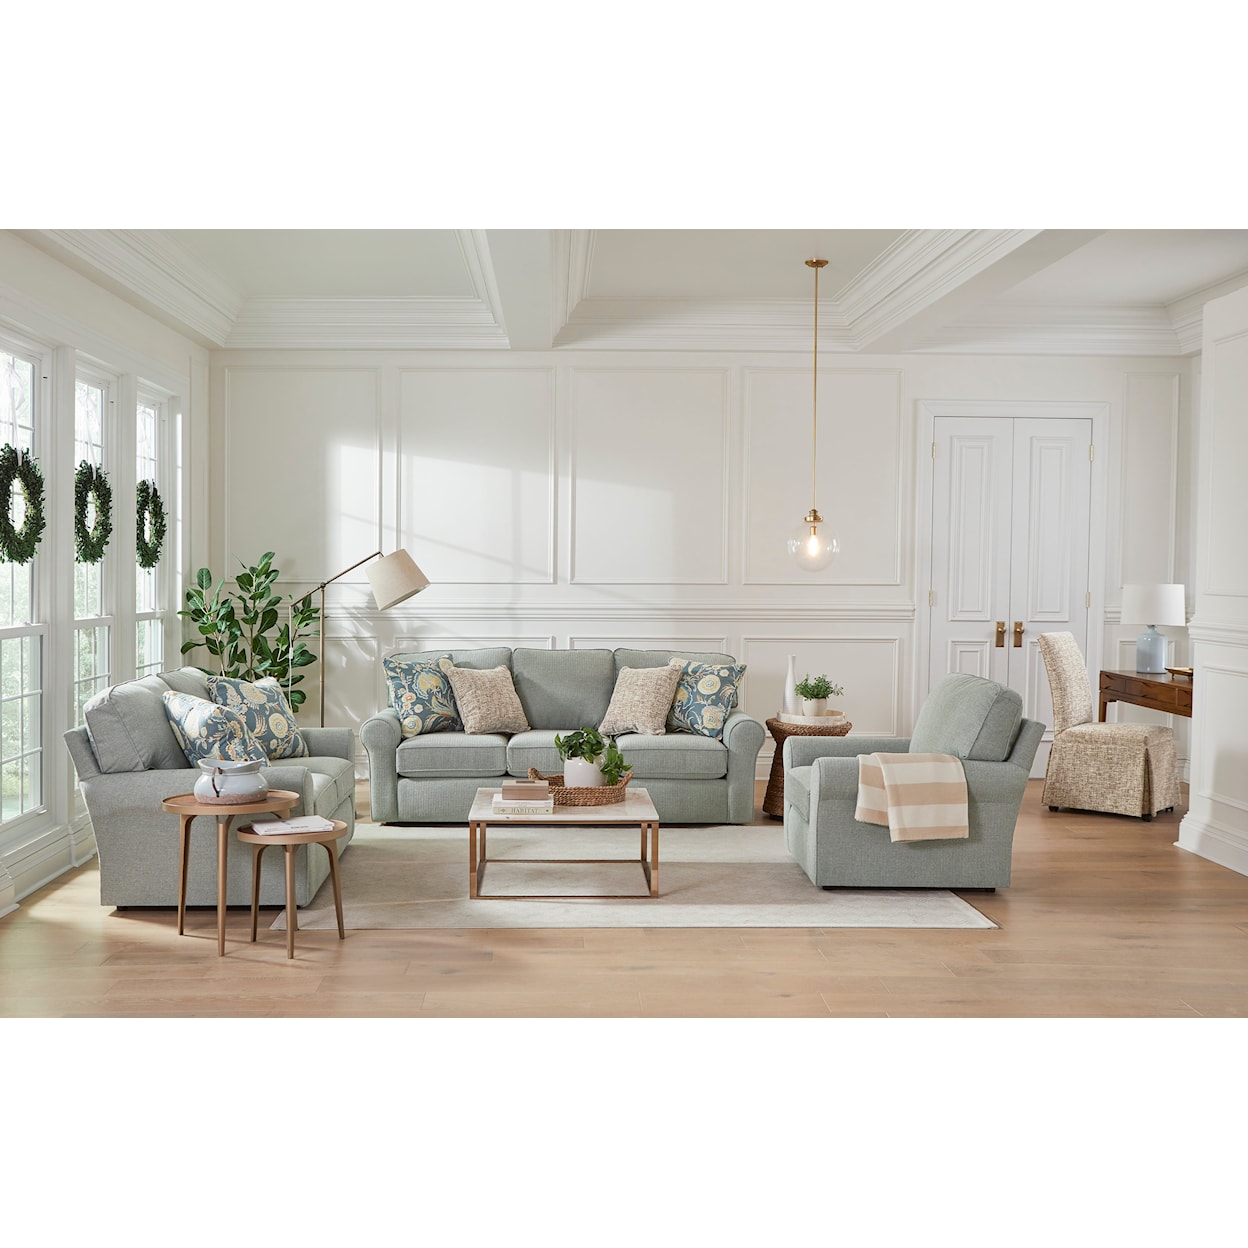 Best Home Furnishings Hanway Sofa